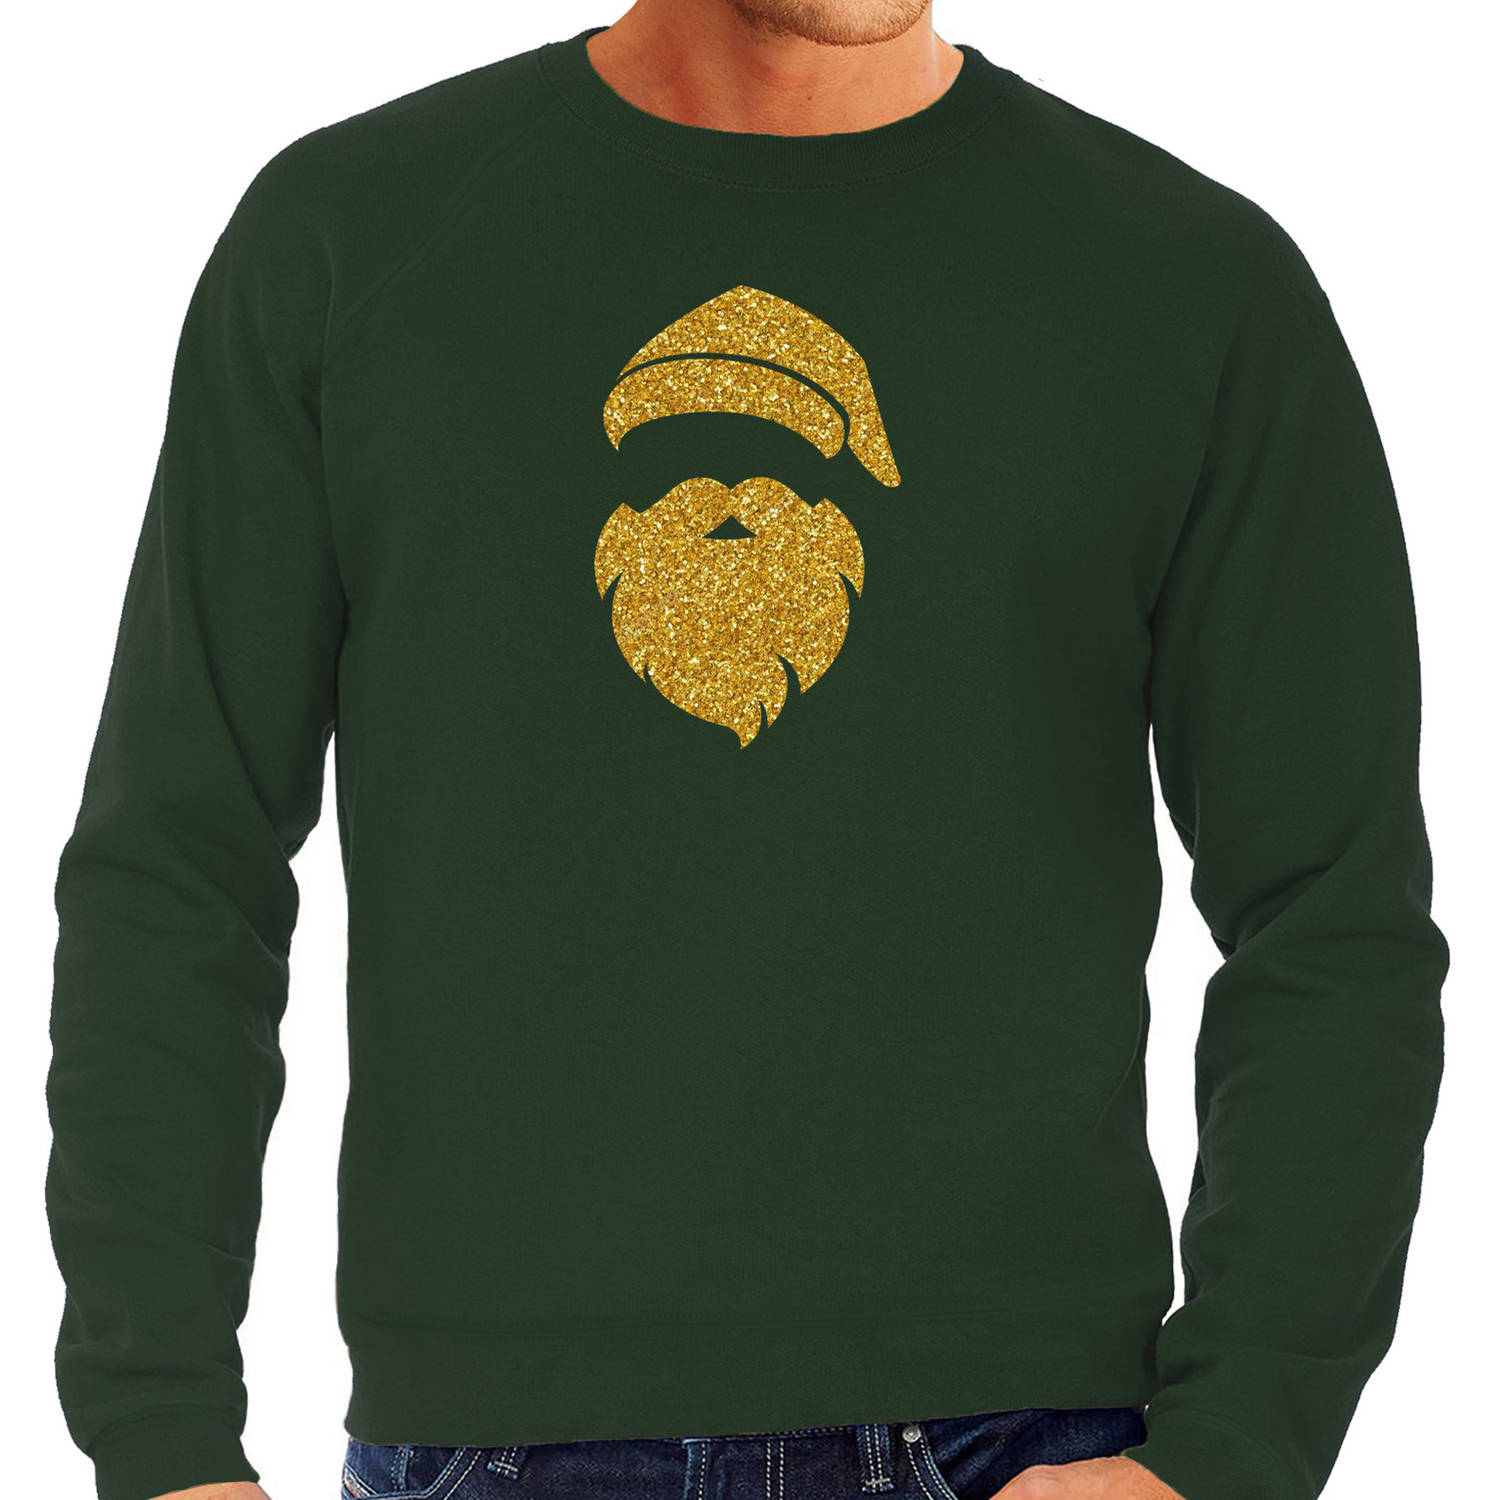 Kerstman hoofd Kerst sweater / trui groen voor heren met gouden glitter bedrukking L - kerst truien